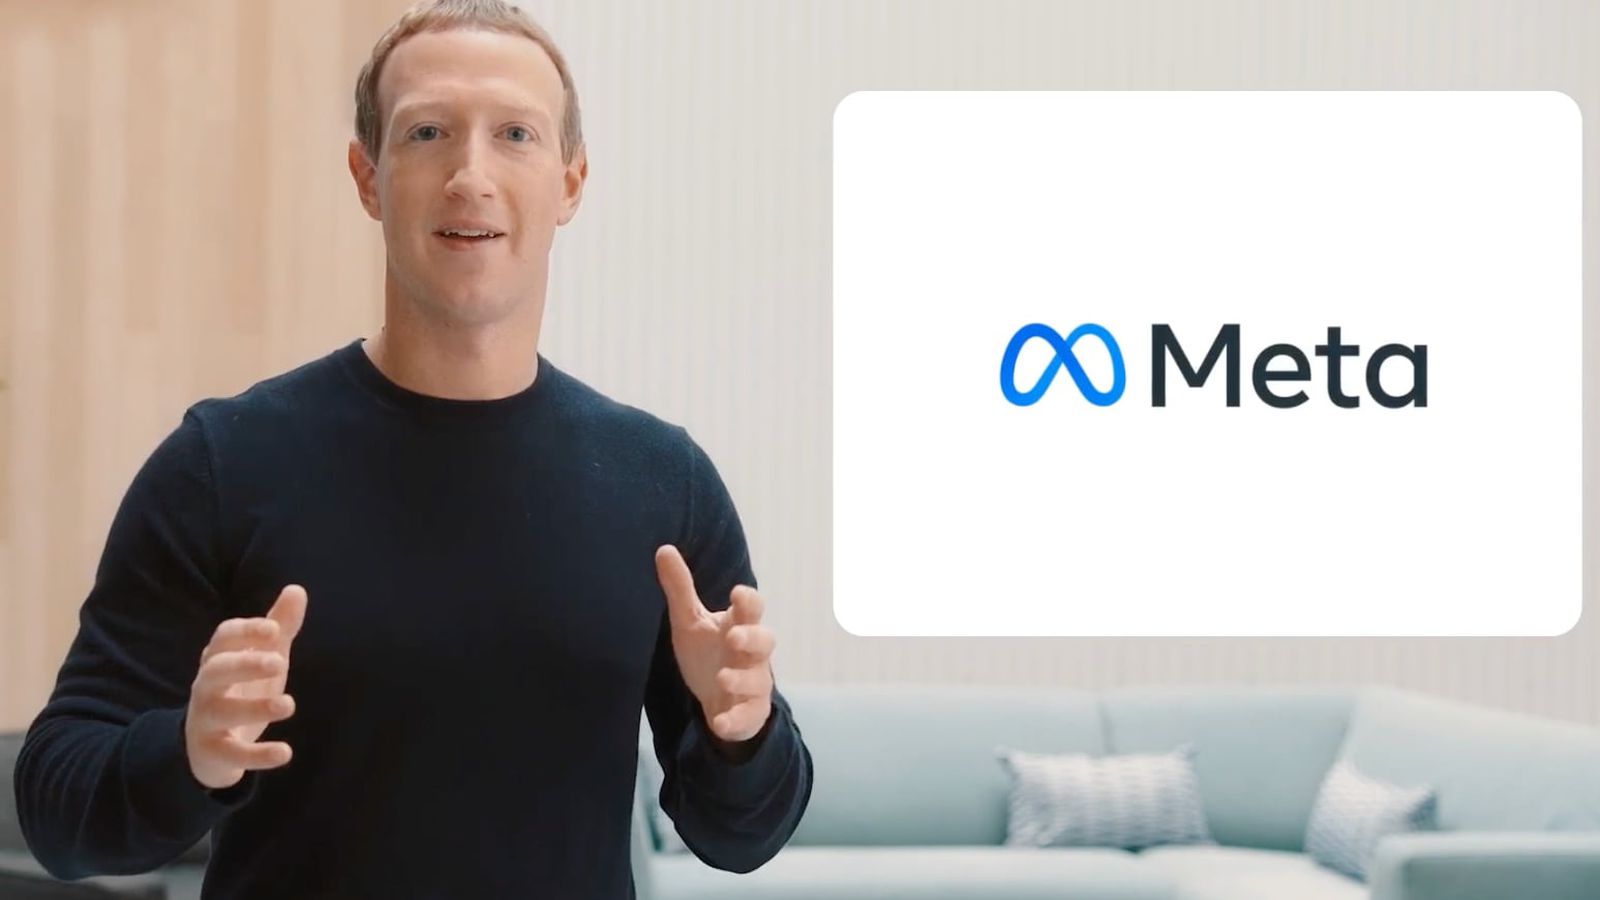 Facebook devine “Meta”. Numele companiei, schimbat într-un efort de rebranding